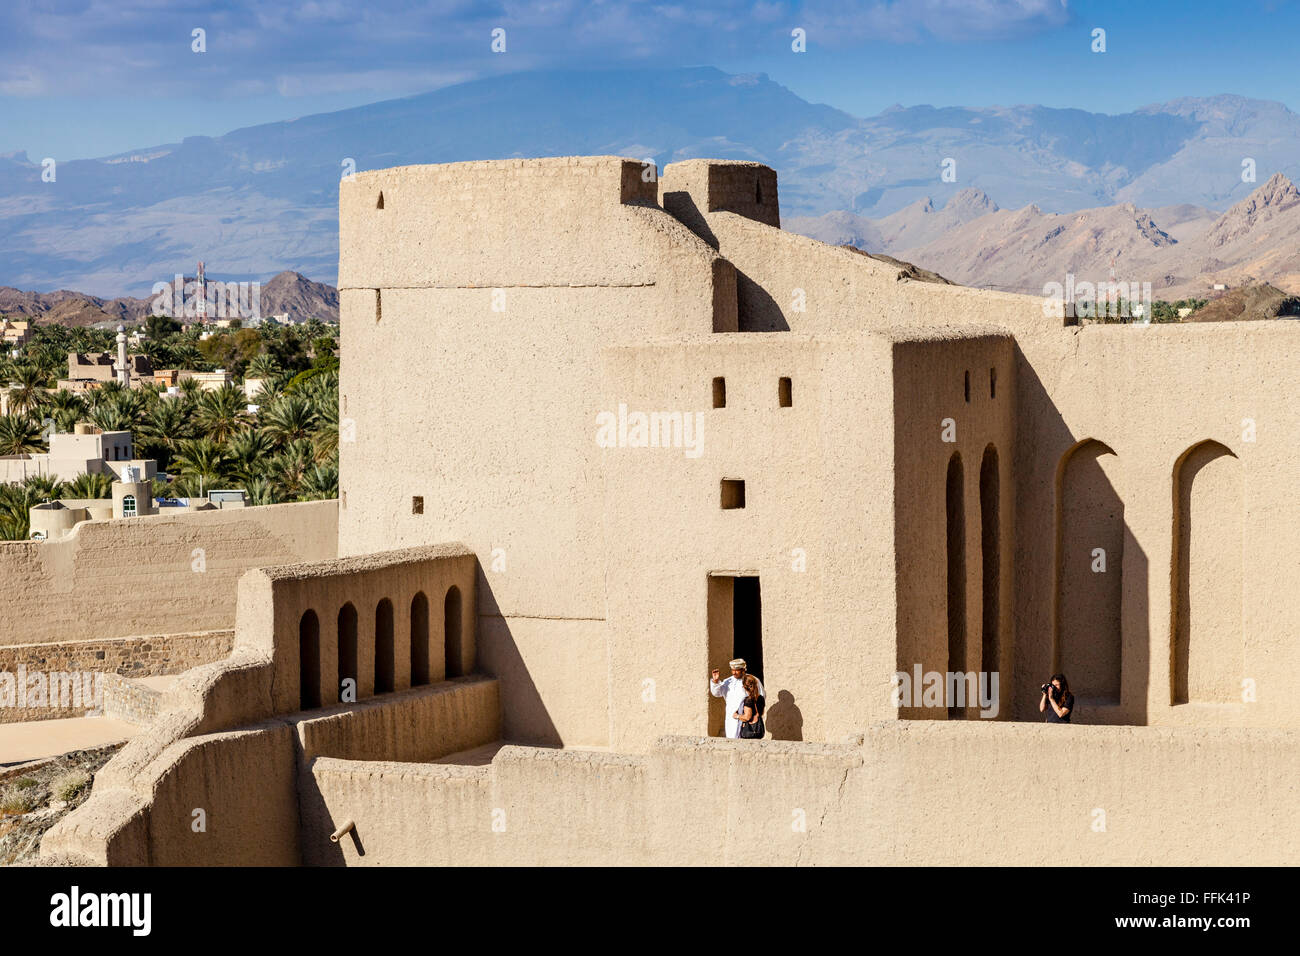 Les touristes visitant Fort de Bahla, Ad Dakhiliyah, Région de l'Oman Banque D'Images